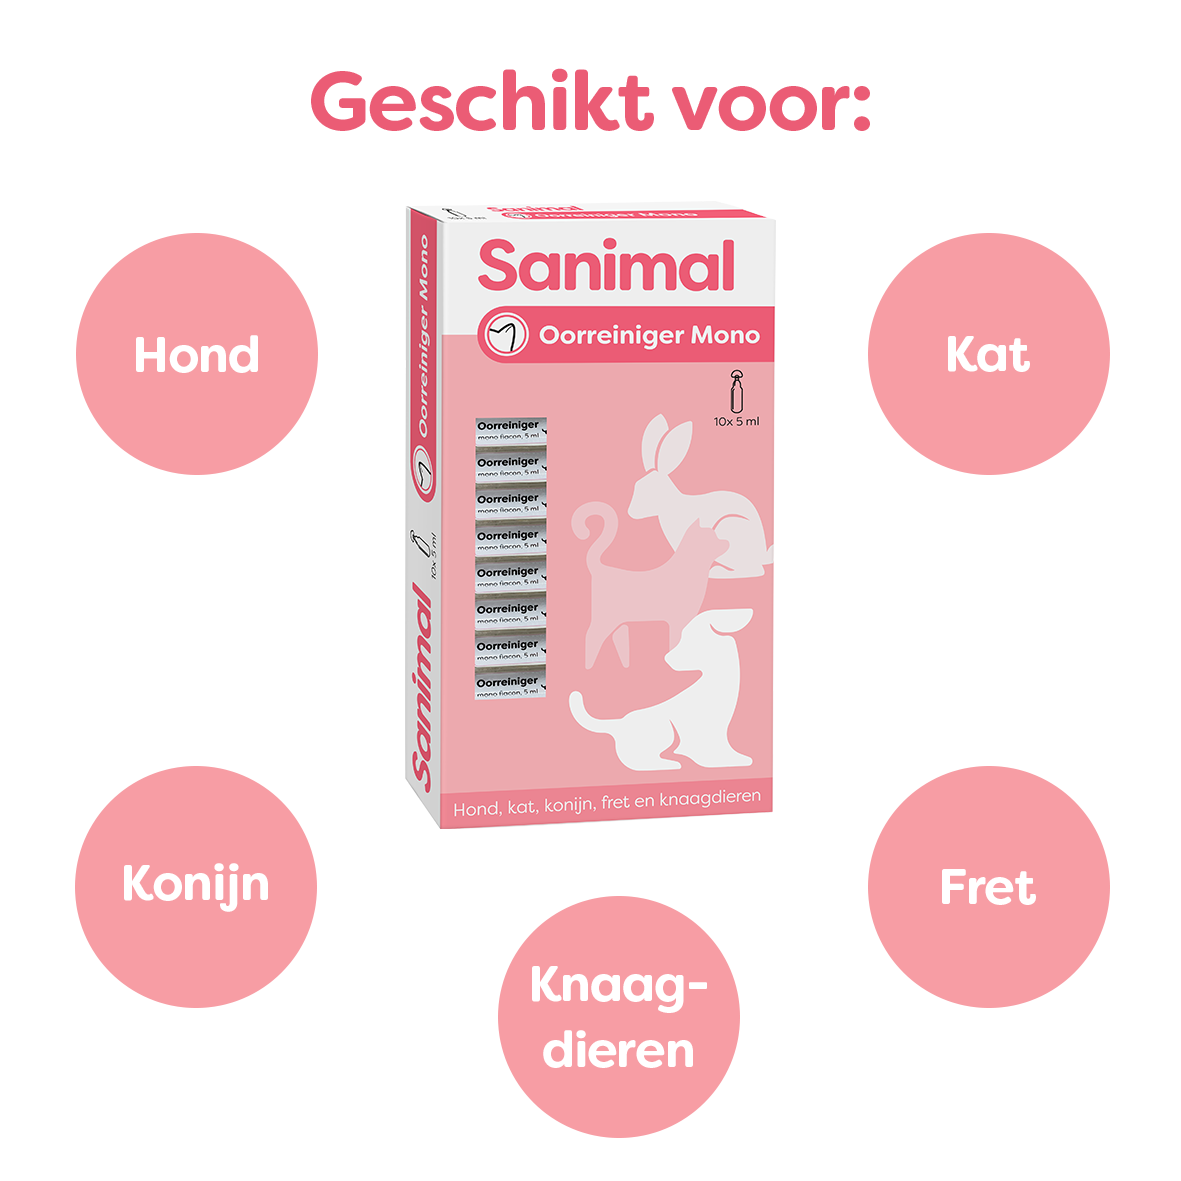 Sanimal Oorreiniger Mono voor hond, kat, konijn, fretten en knaagdieren - Emax.nl